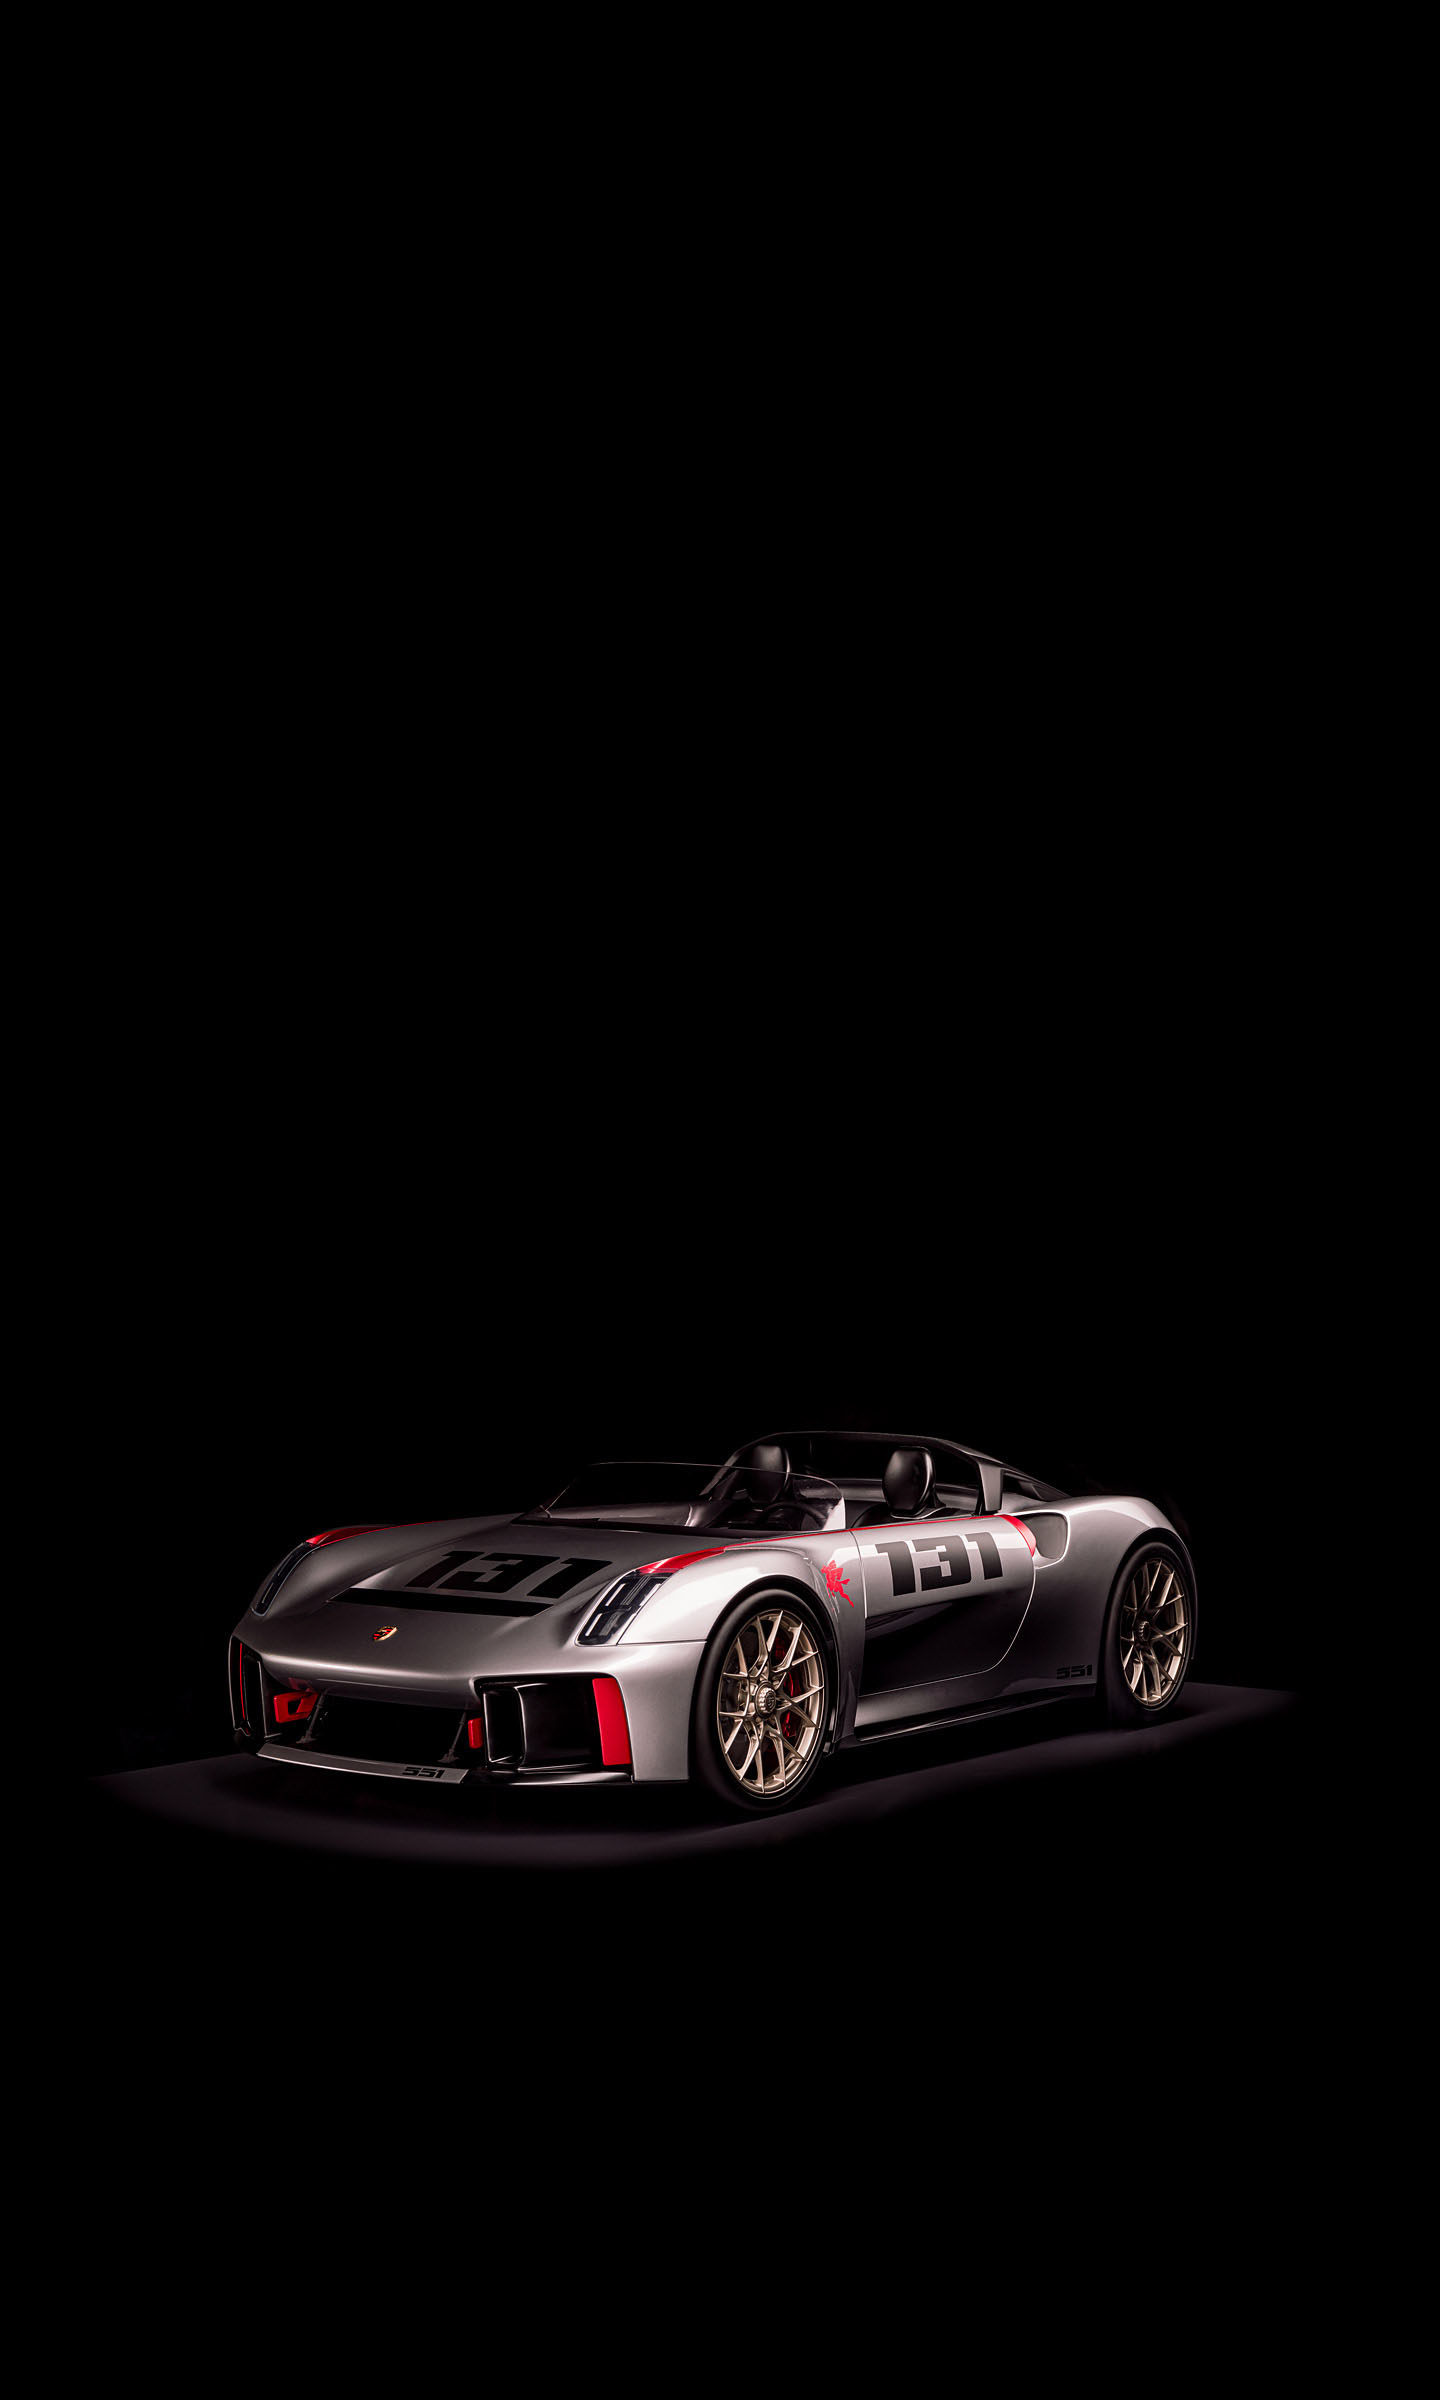  2019 Porsche Vision Spyder Concept Wallpaper.